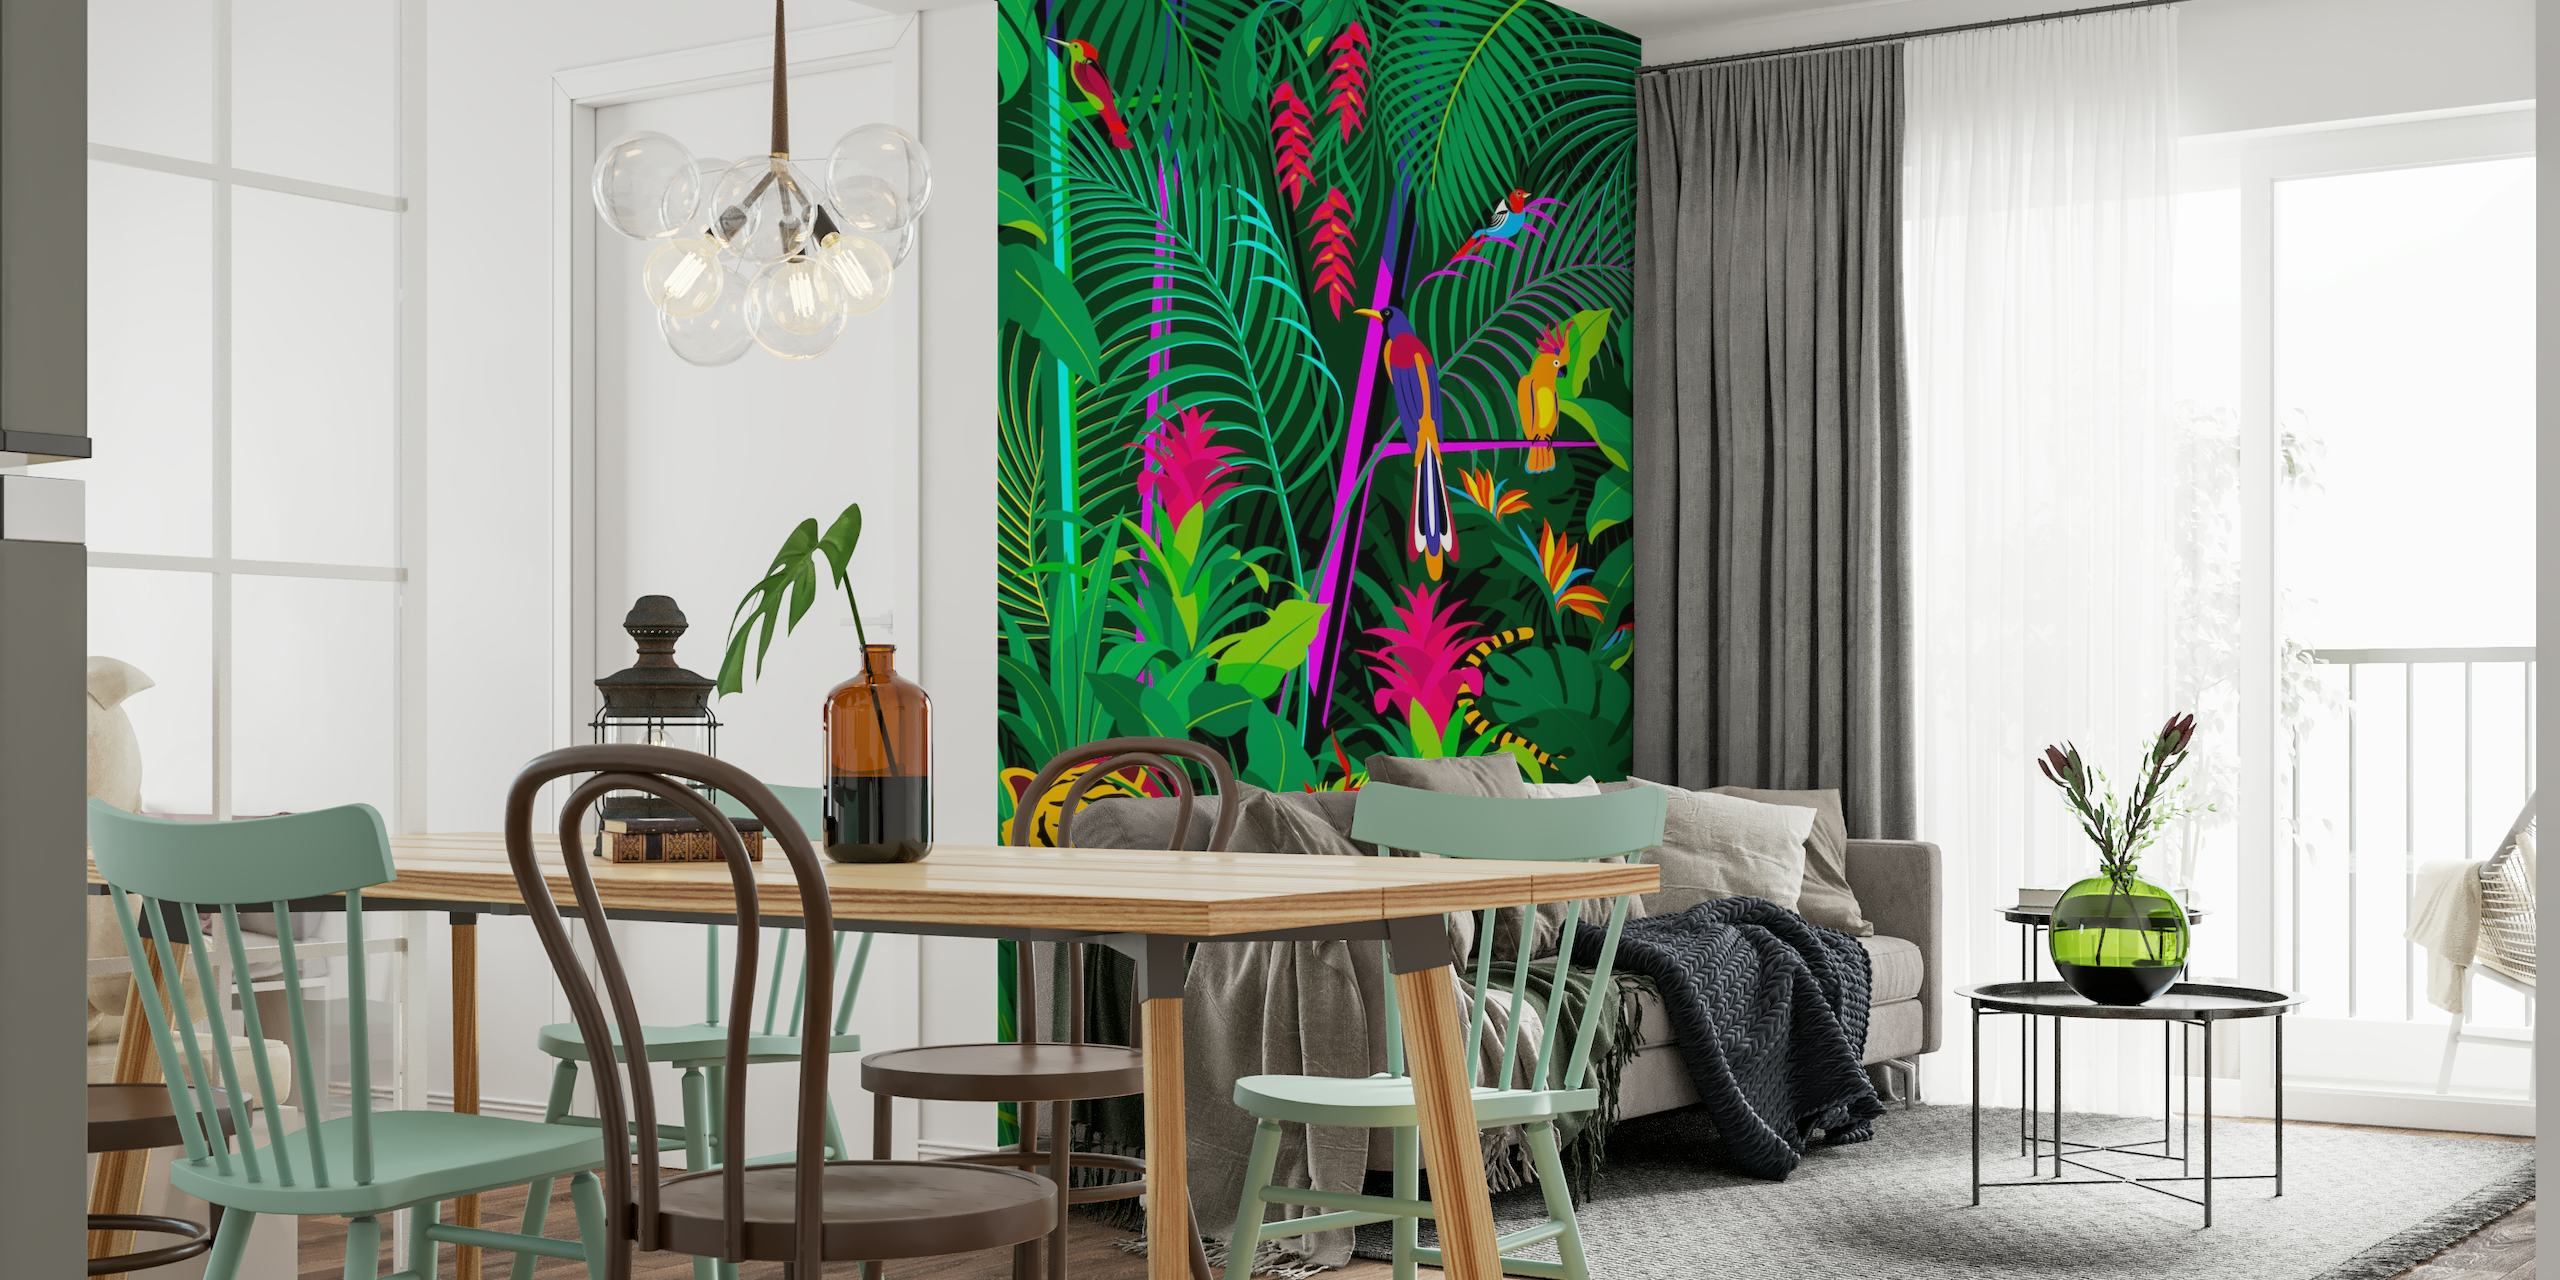 Fototapeta z tropikalną dżunglą przedstawiającą gęste zielone liście, kolorowe kwiaty i ukrytego tygrysa